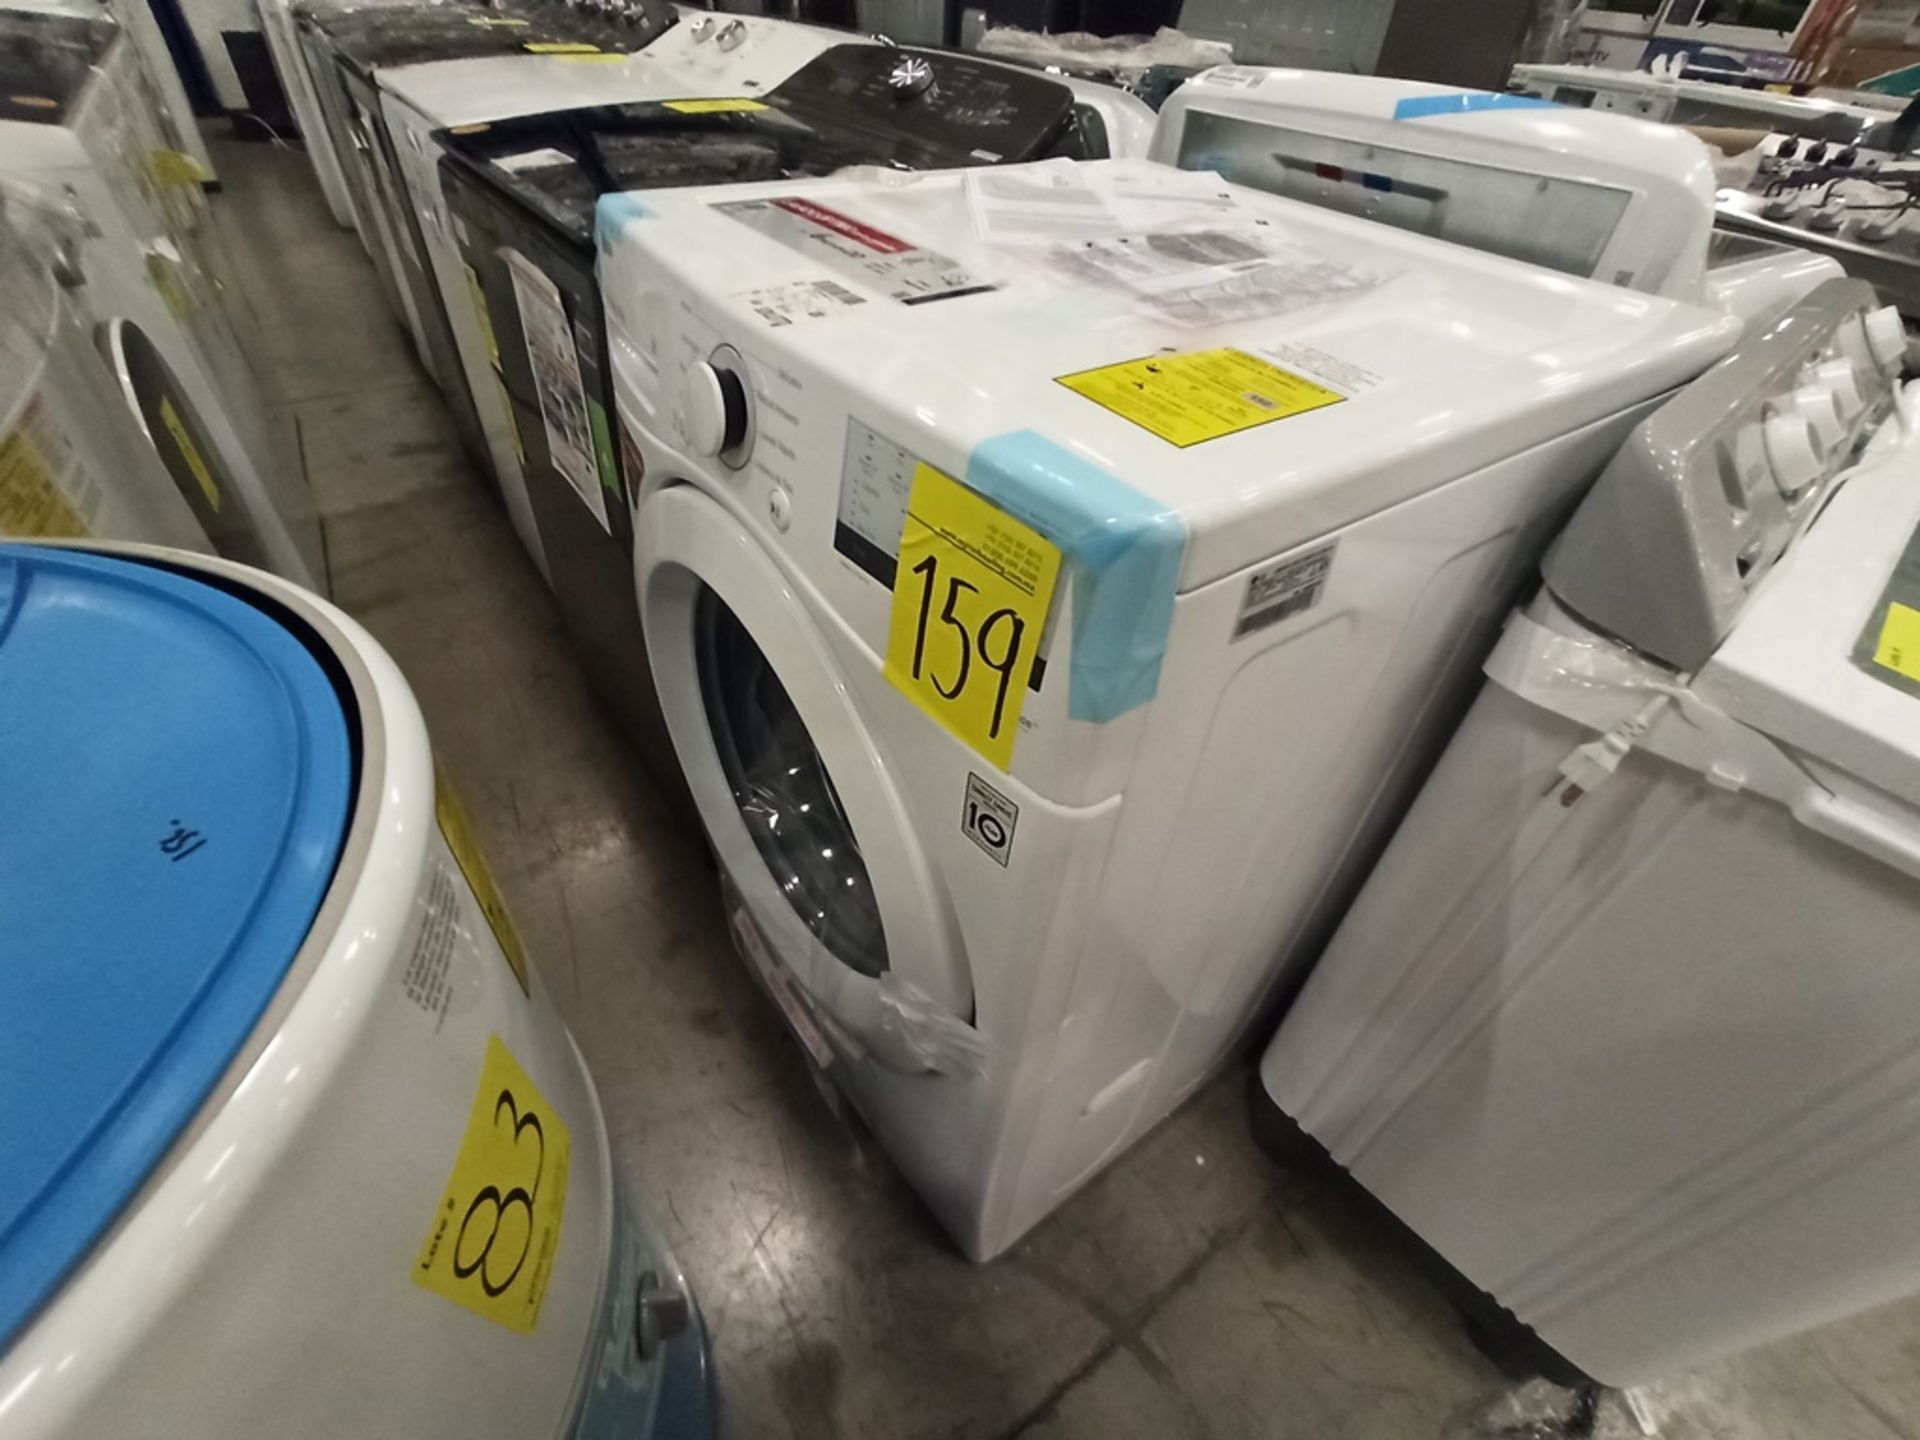 Lote de 2 lavadoras contiene: 1 lavadora de 24kg Marca WHIRPOOL, Modelo 8MWTWLA41WJG0, SerieHLB3888 - Image 15 of 18